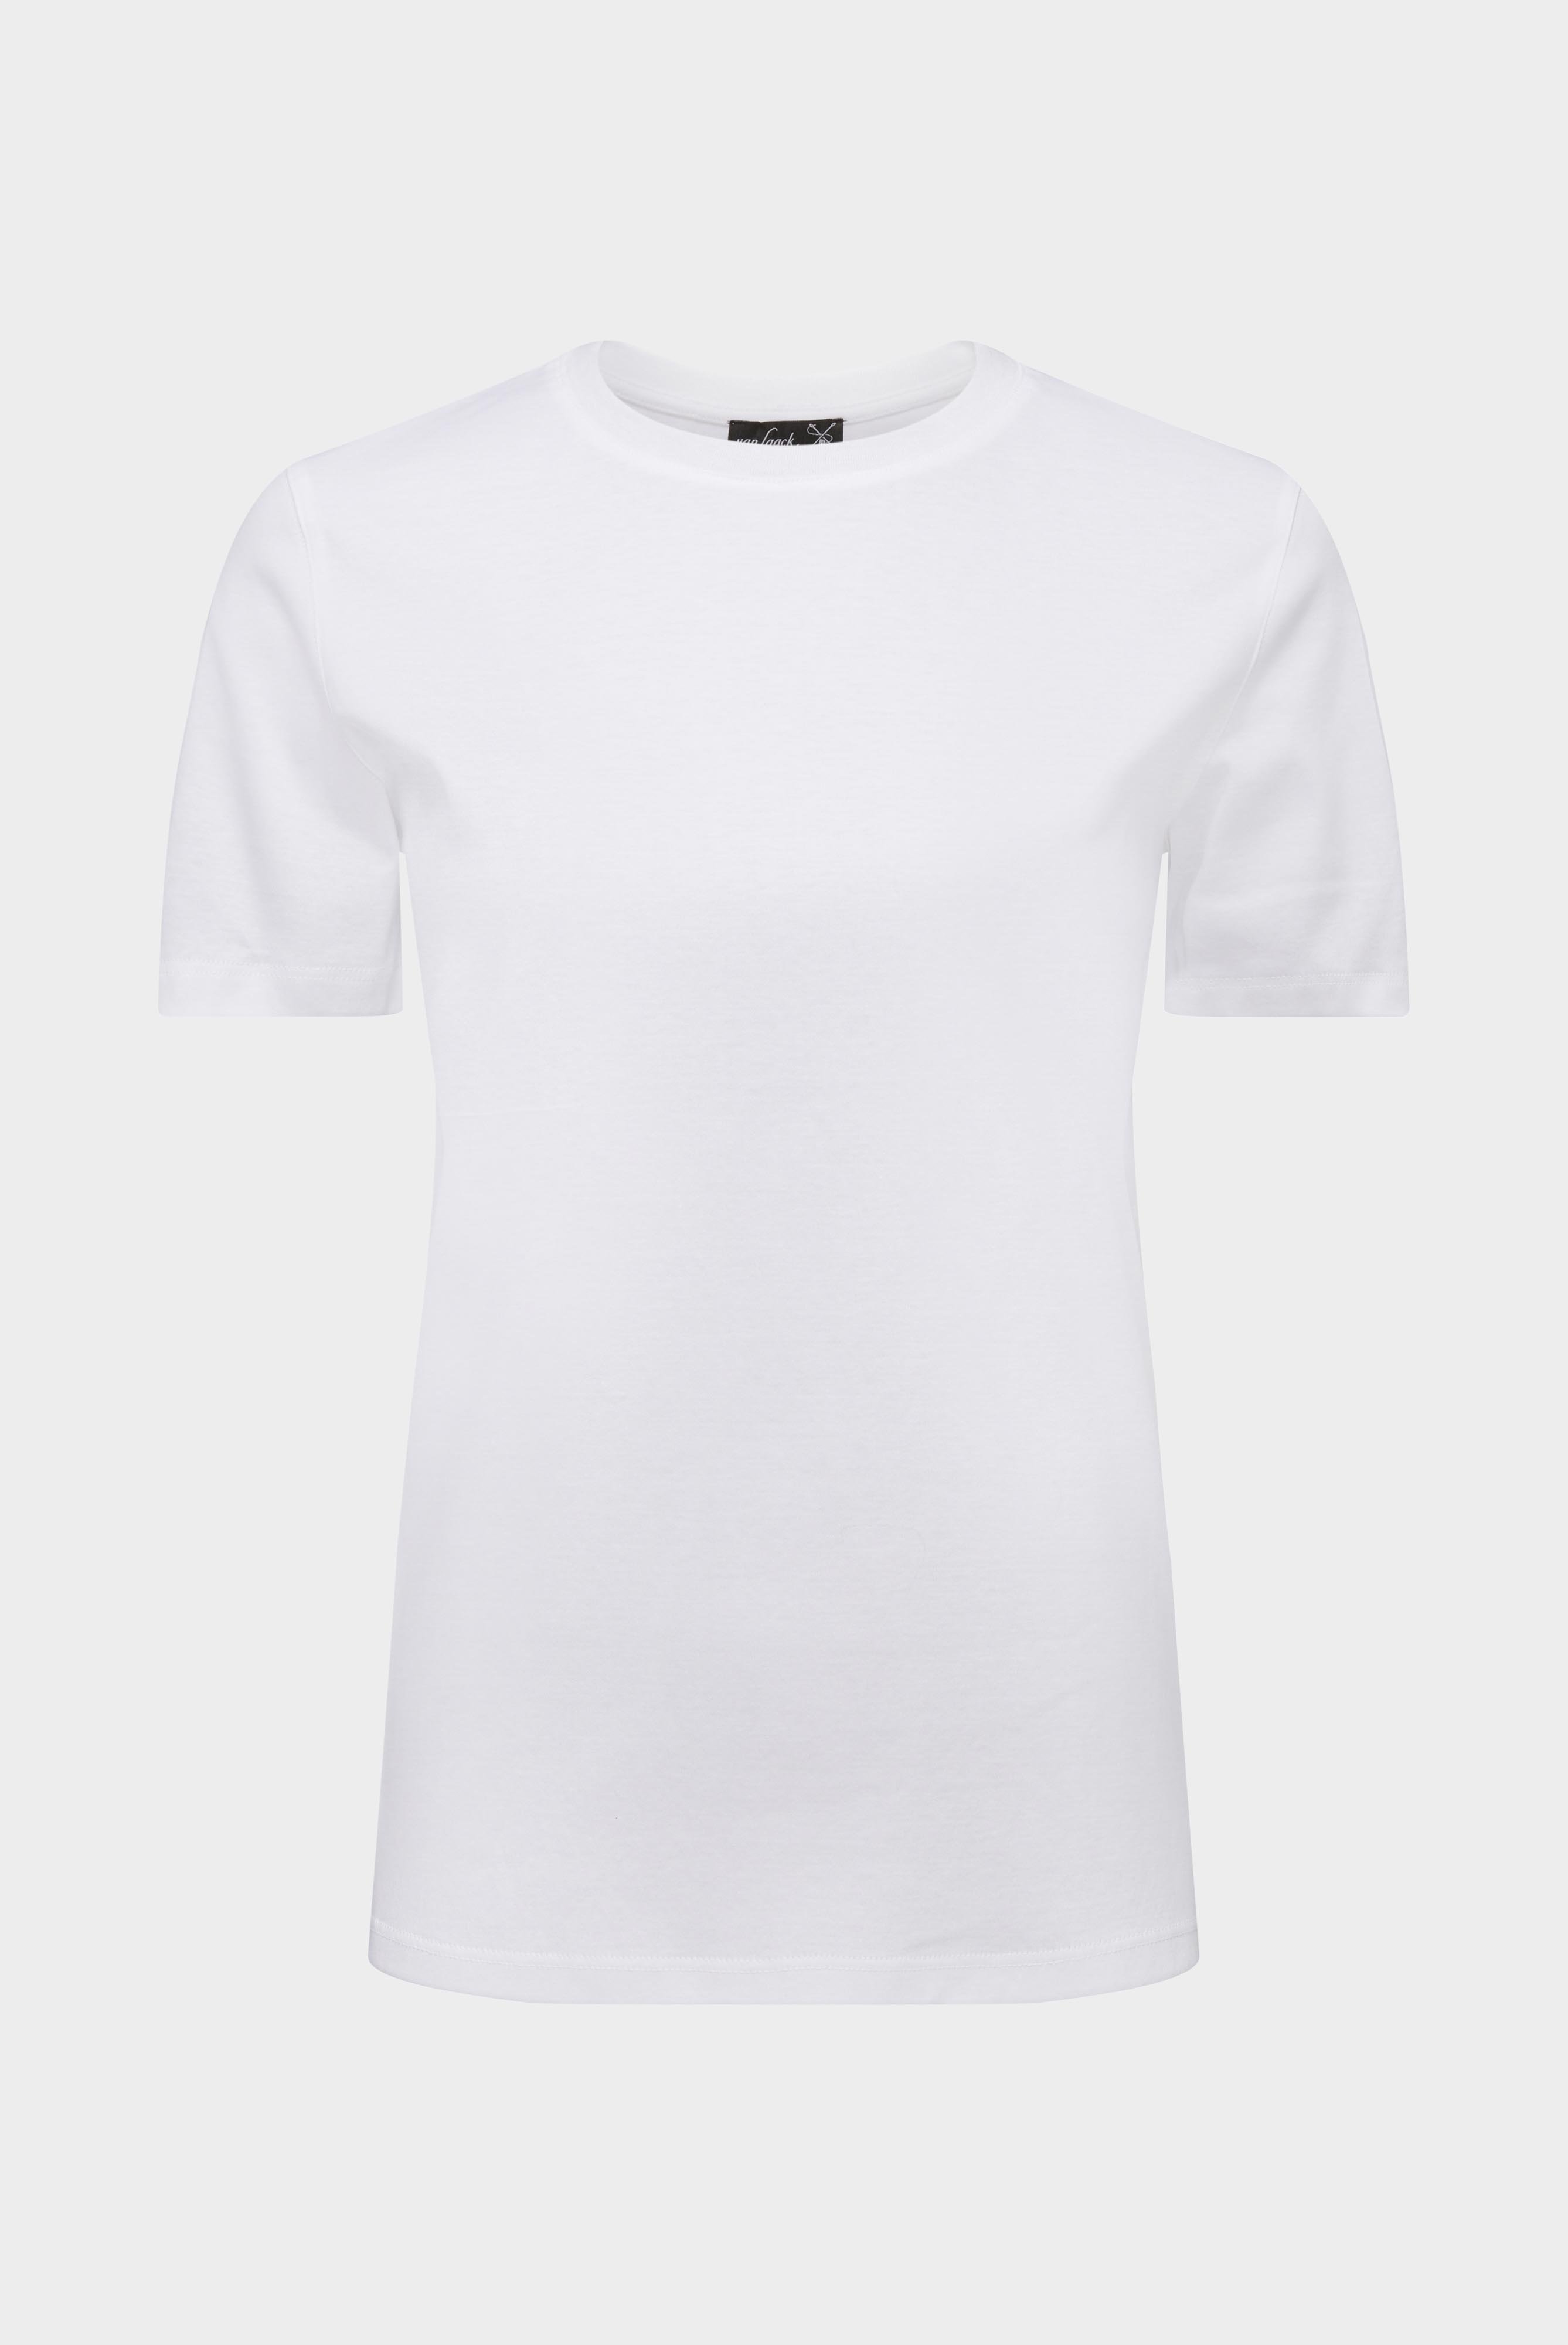 Tops & T-Shirts+Jersey T-Shirt+05.6384.18.180031.000.32